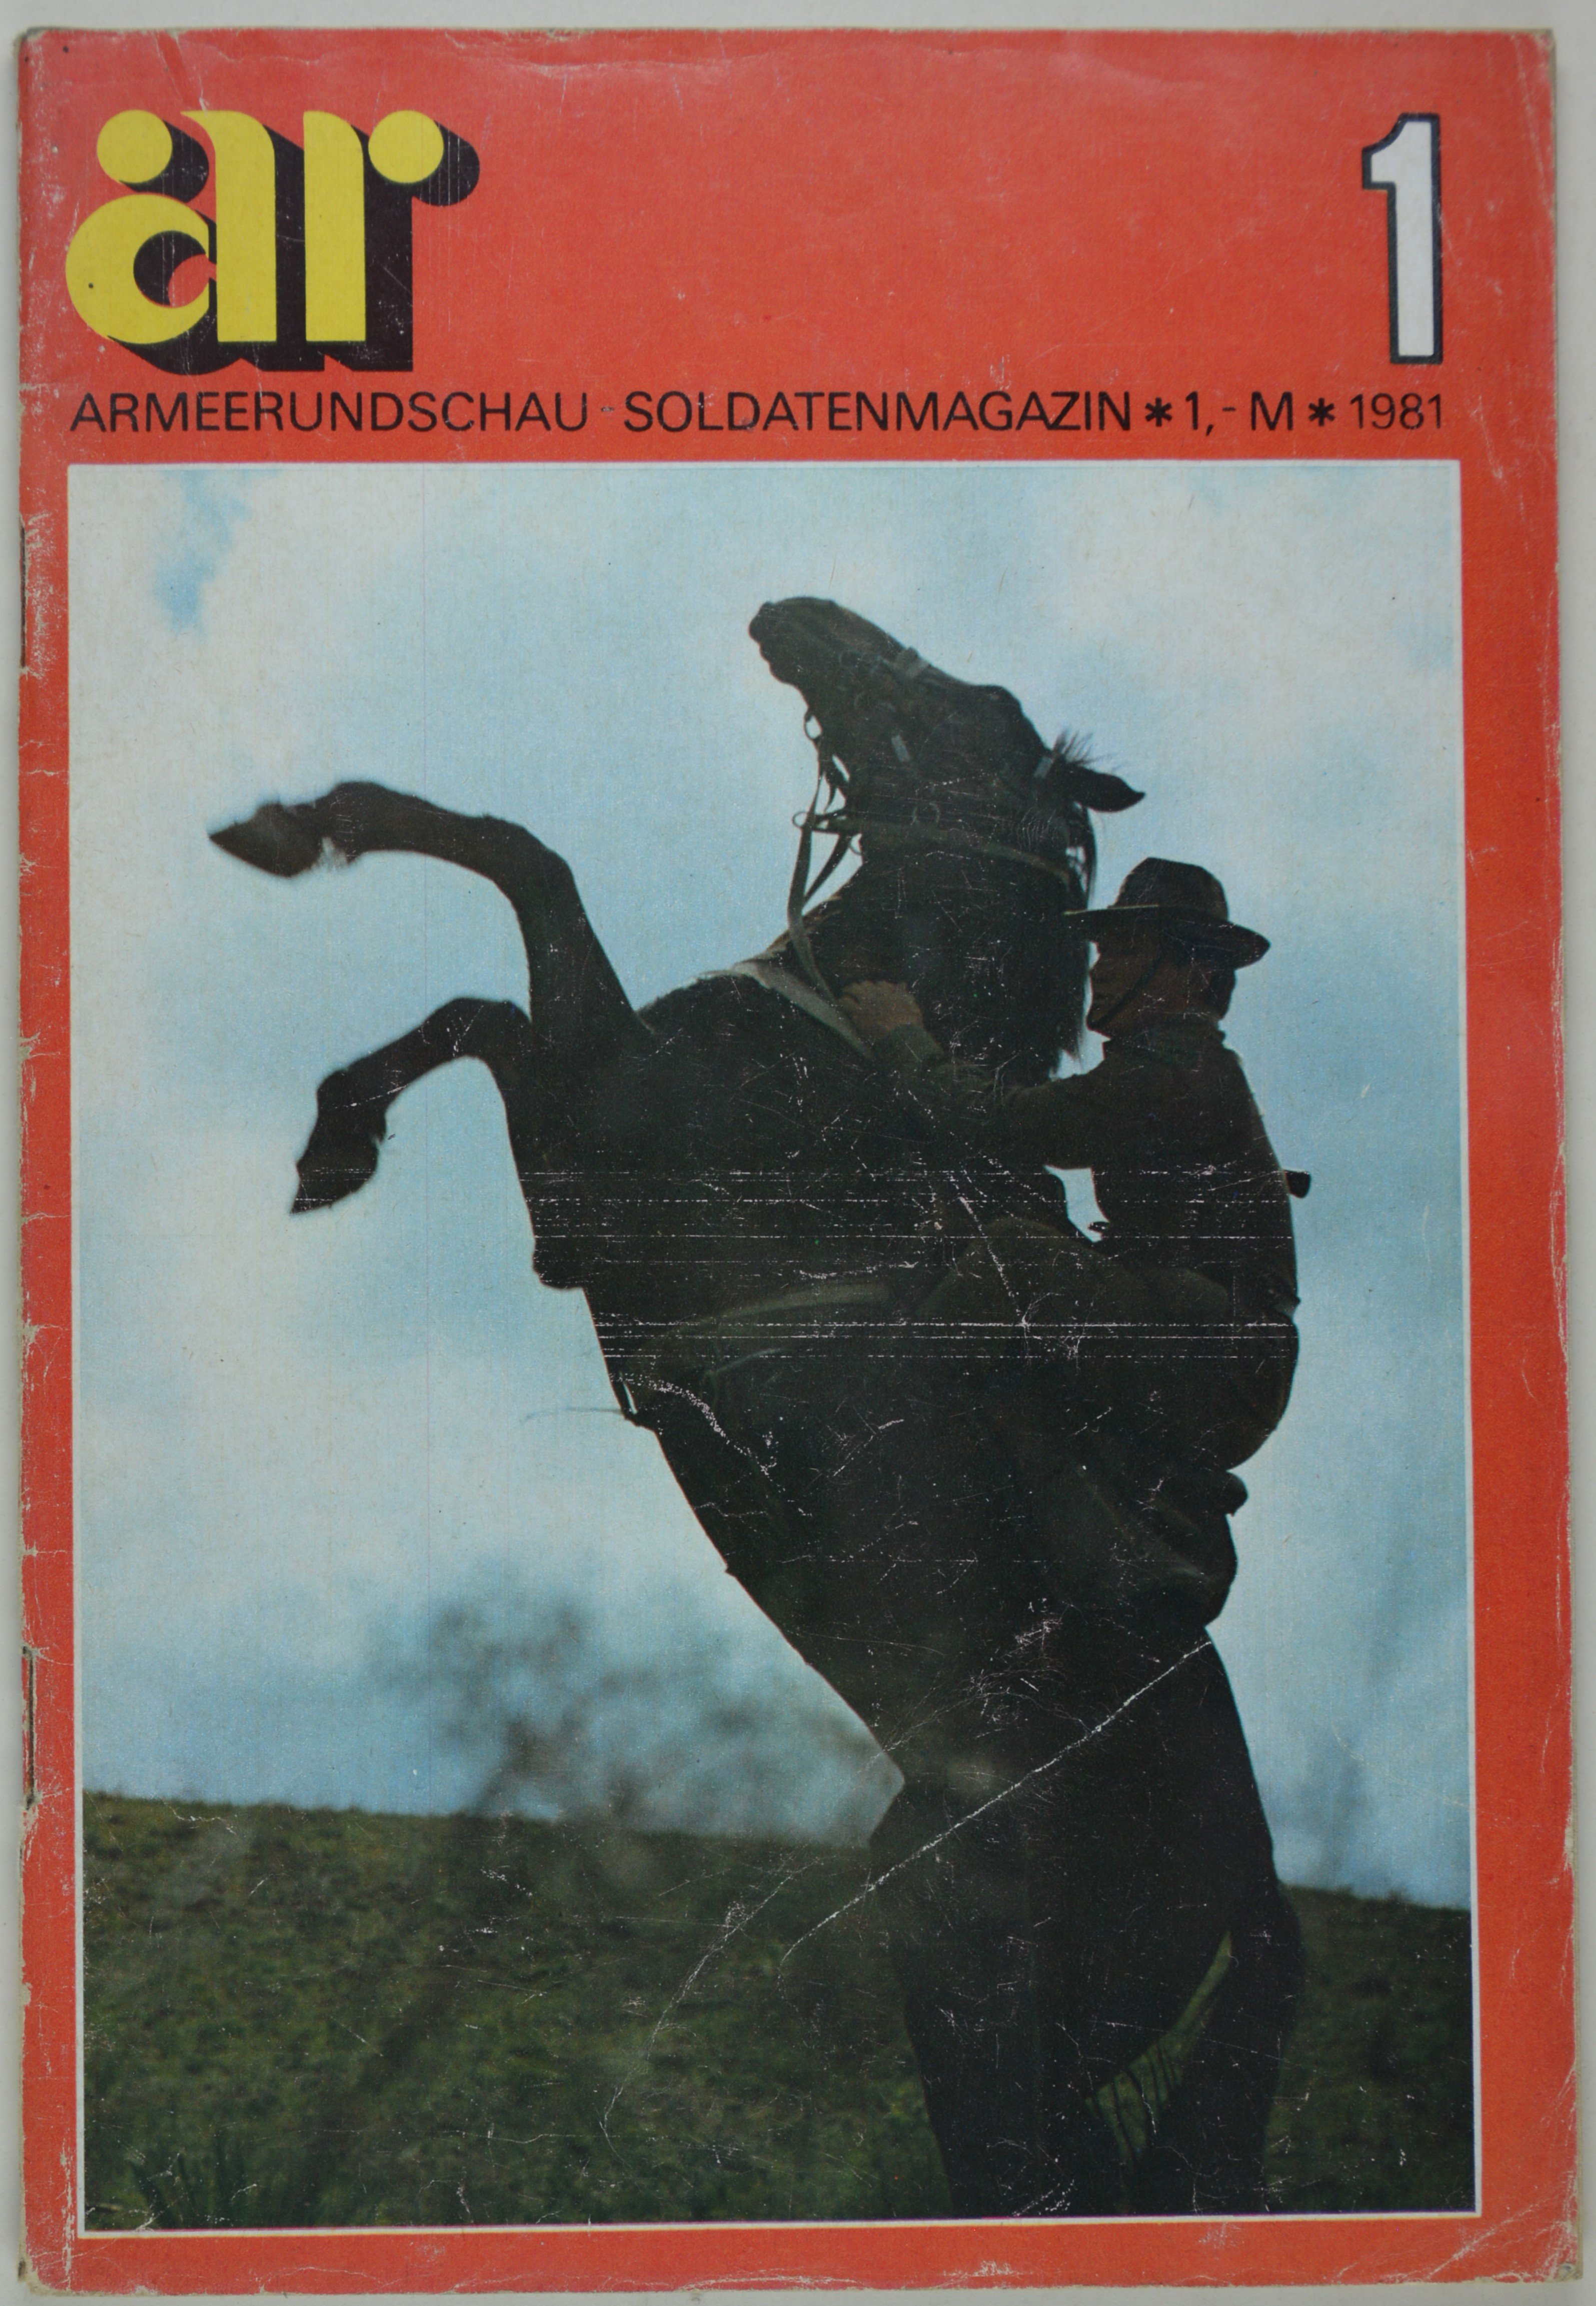 Armeerundschau - Soldatenmagazin (1981), Heft 1 (DDR Geschichtsmuseum im Dokumentationszentrum Perleberg CC BY-SA)